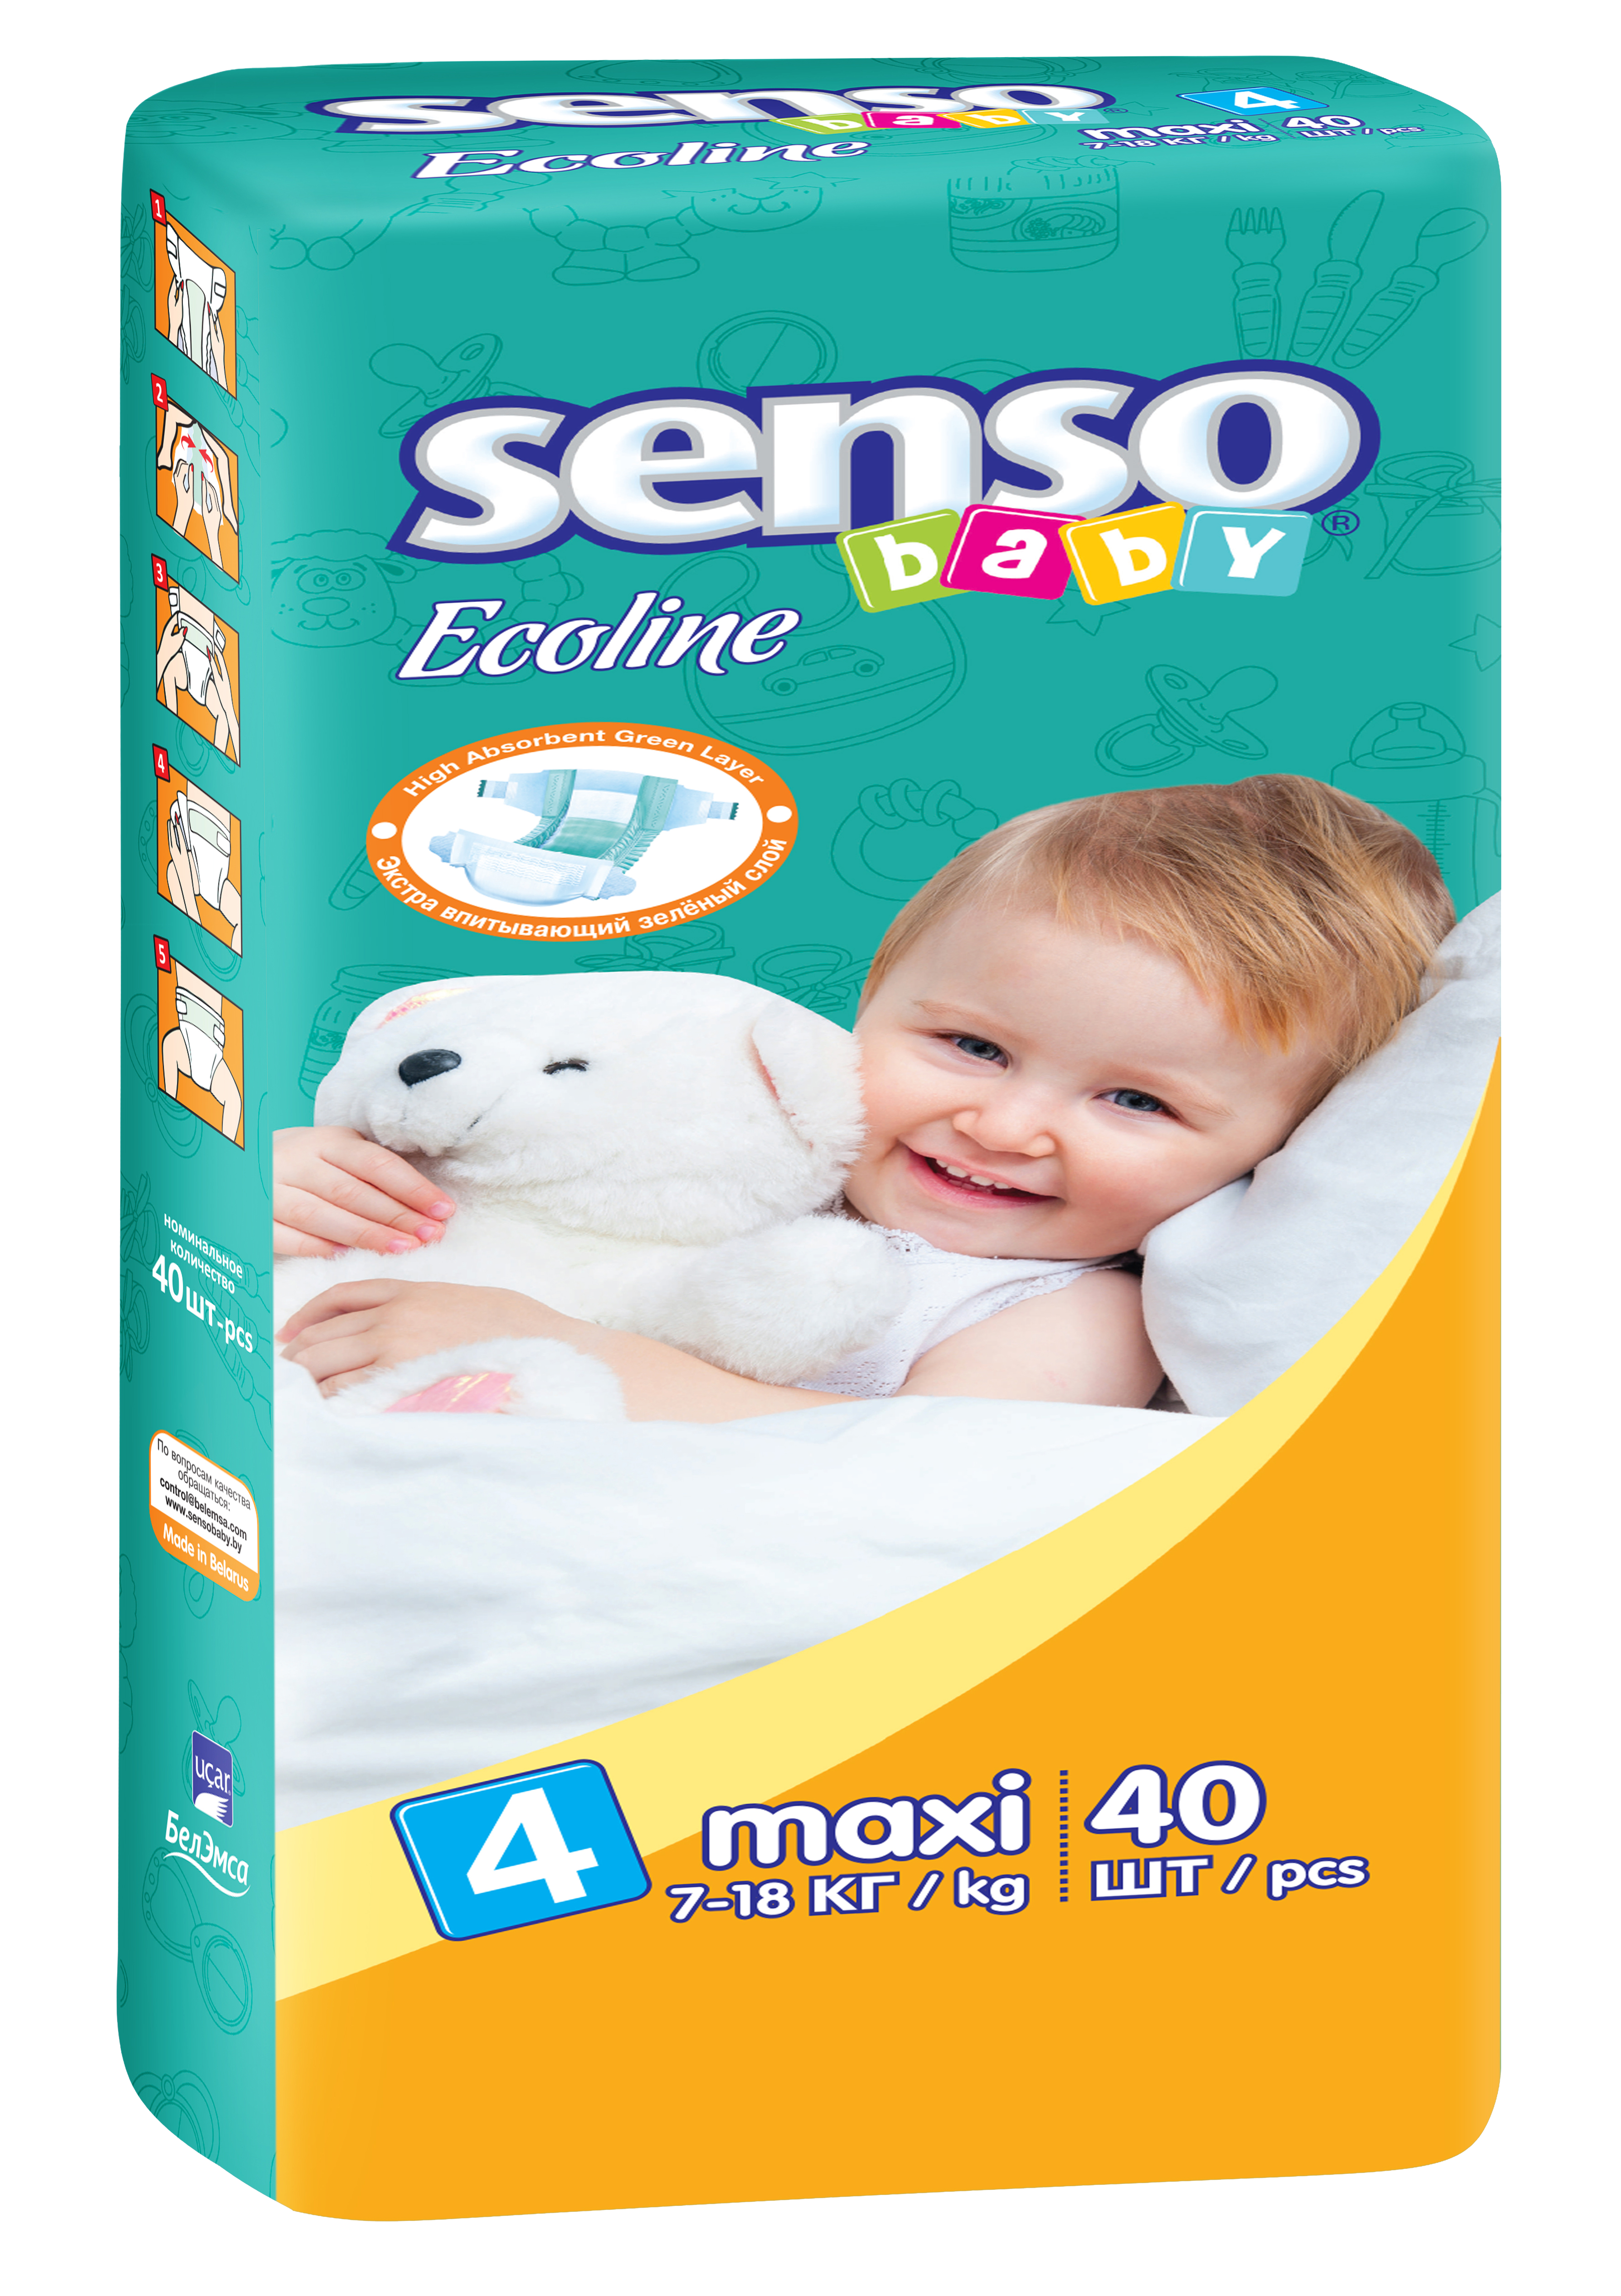 Детские подгузники "Senso Baby" Ecoline 7 18кг 40шт